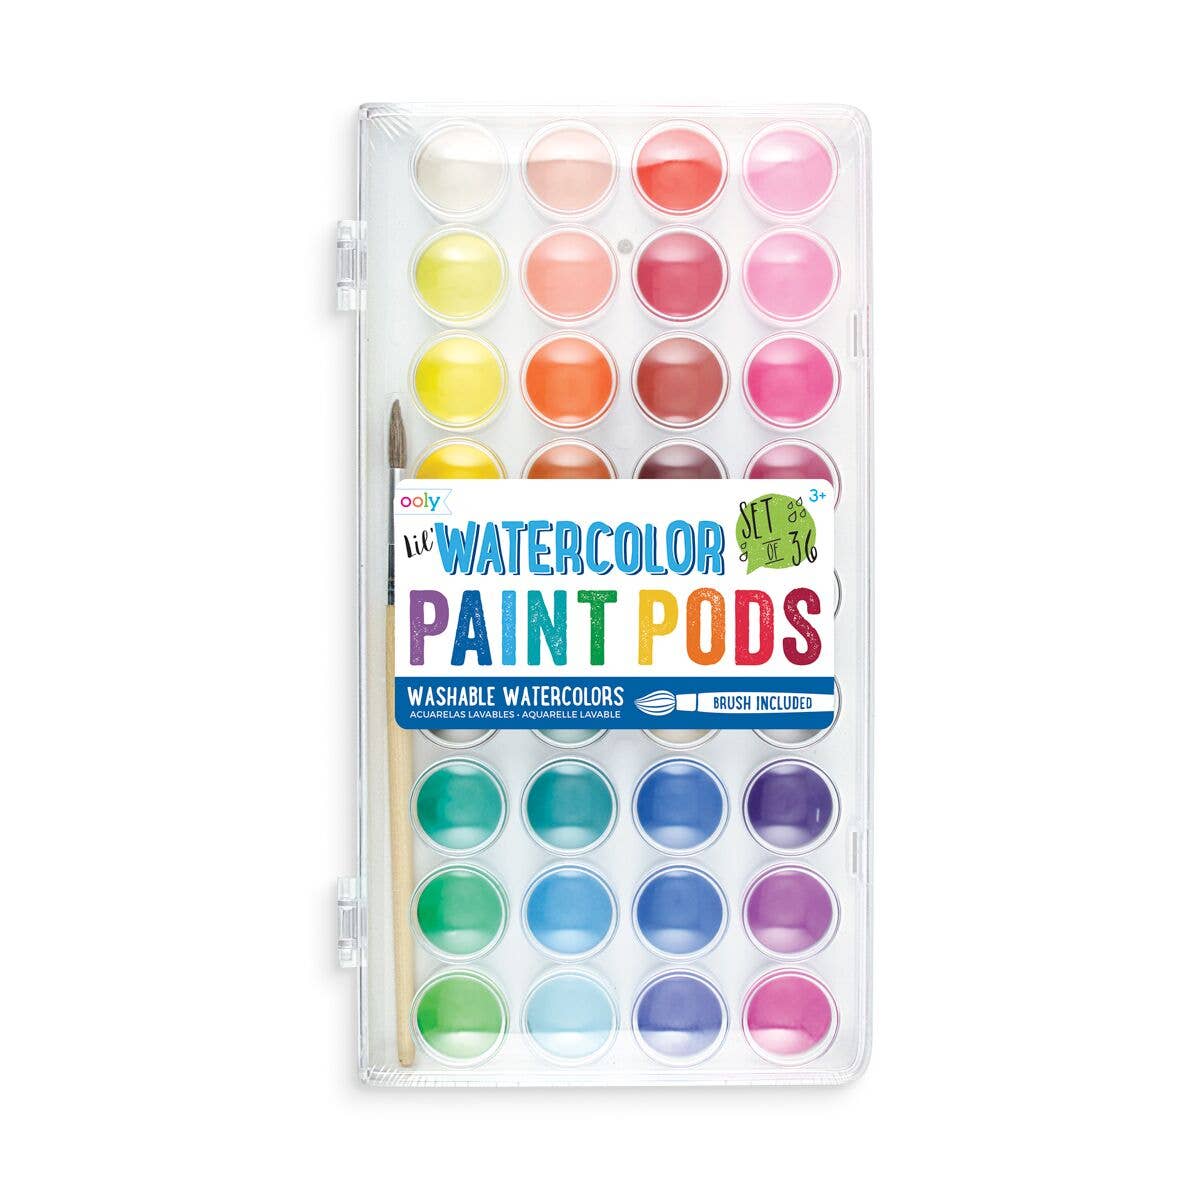 Lil' Paint Pods Watercolor Paint Sets